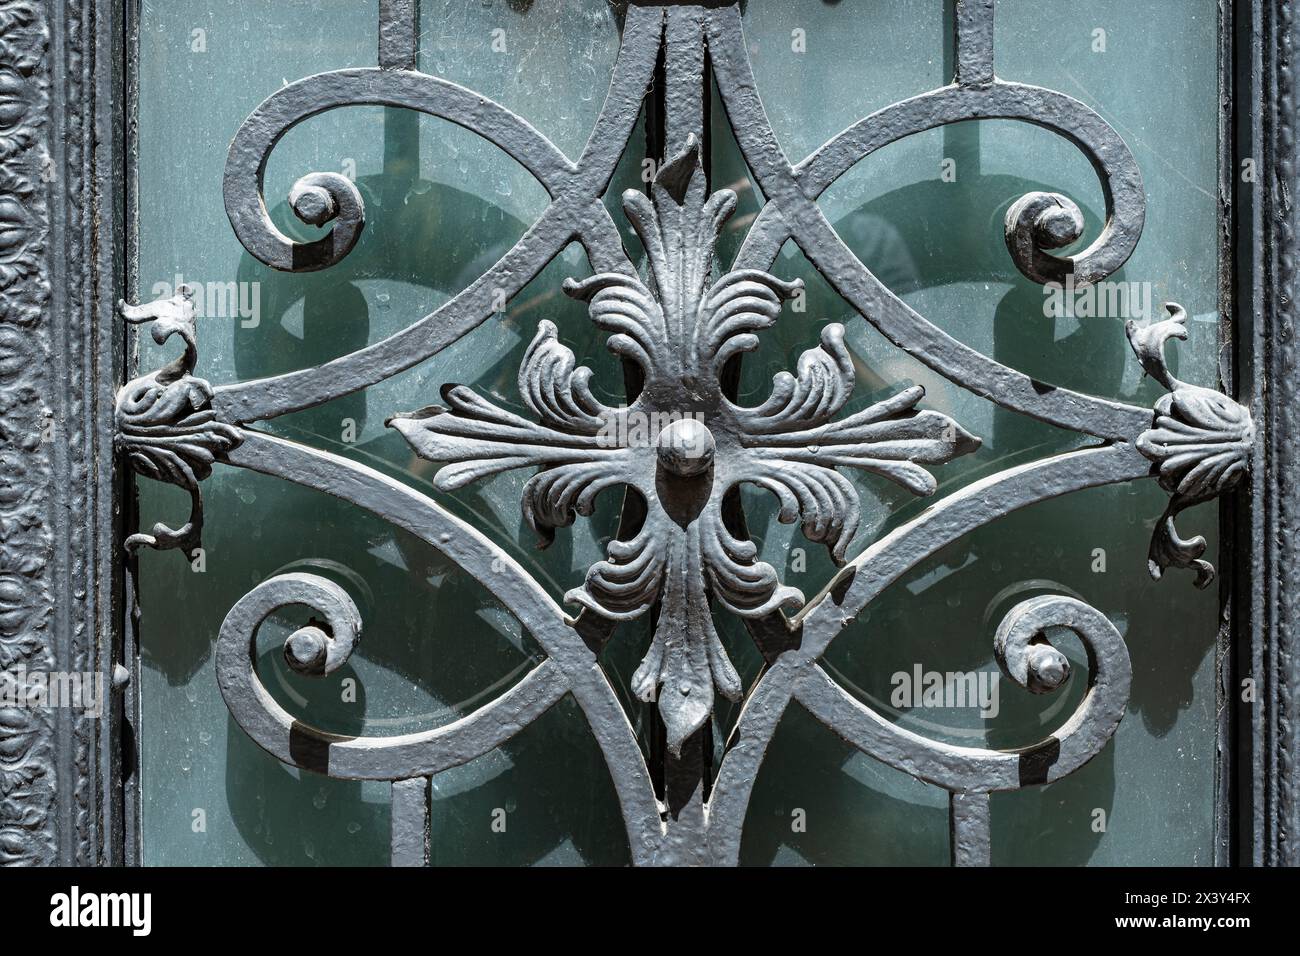 Architektonische Details von eisernem floralen Zierwerk in der historischen Altstadt von Bozen, Südtirol, Italien. Dettagli architettonici della flora del ferro Foto Stock